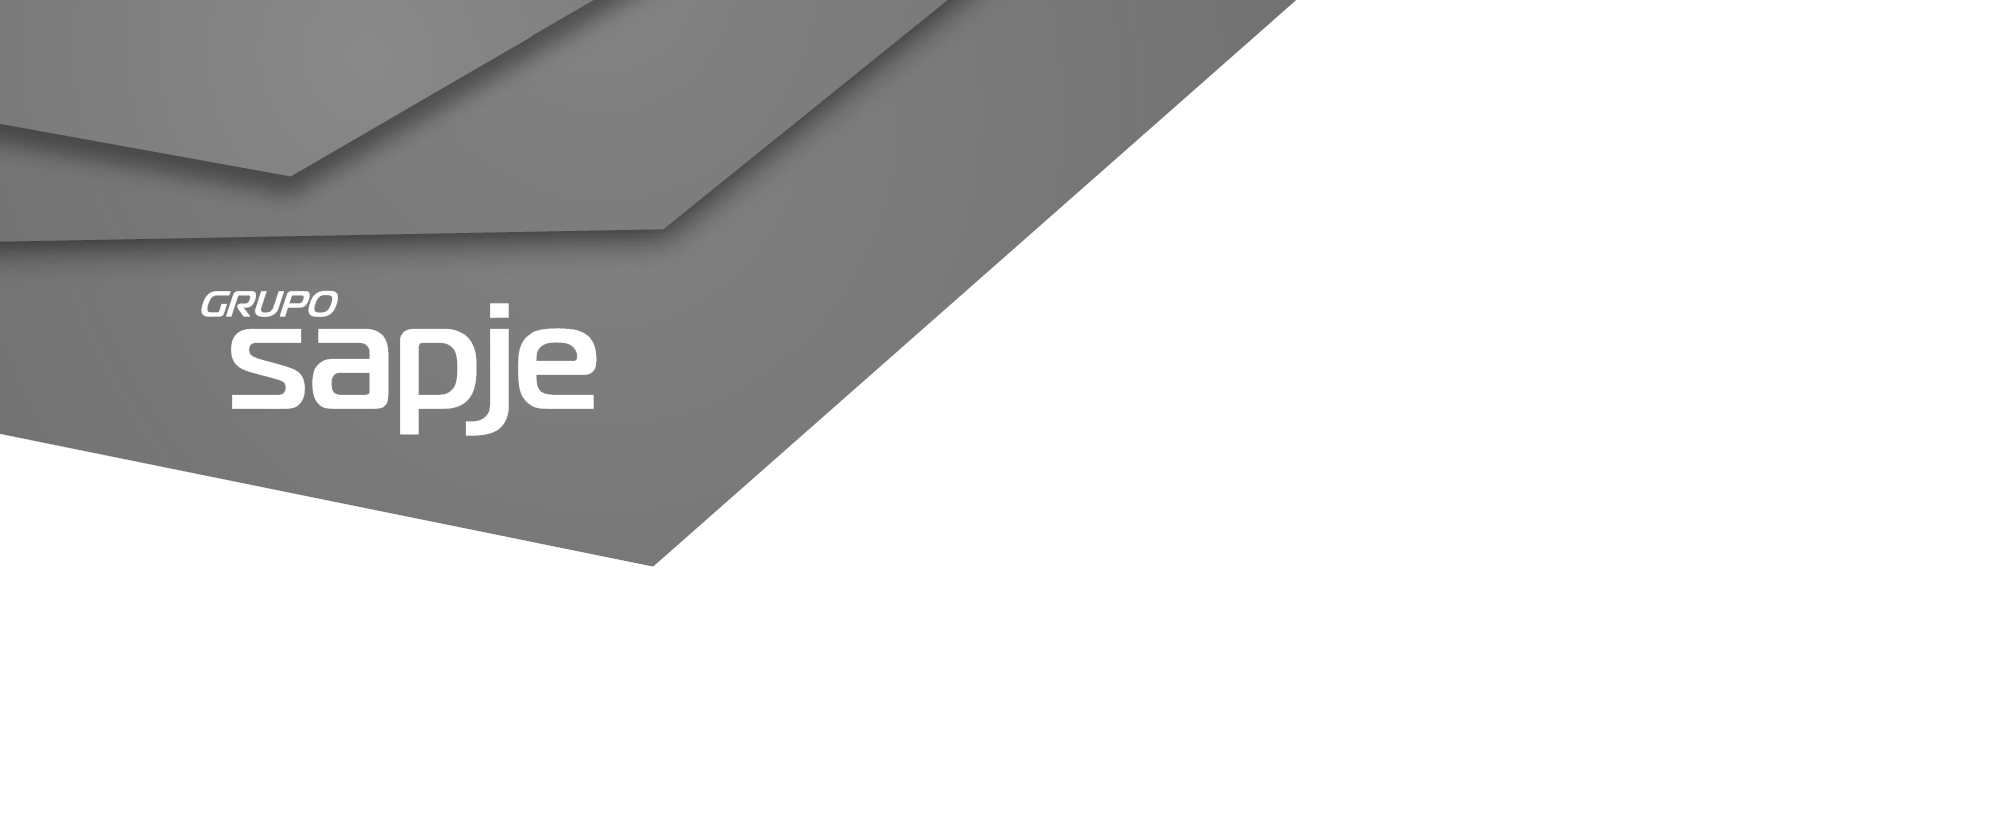 Cabecera con logo del grupo SAPJE gris silver